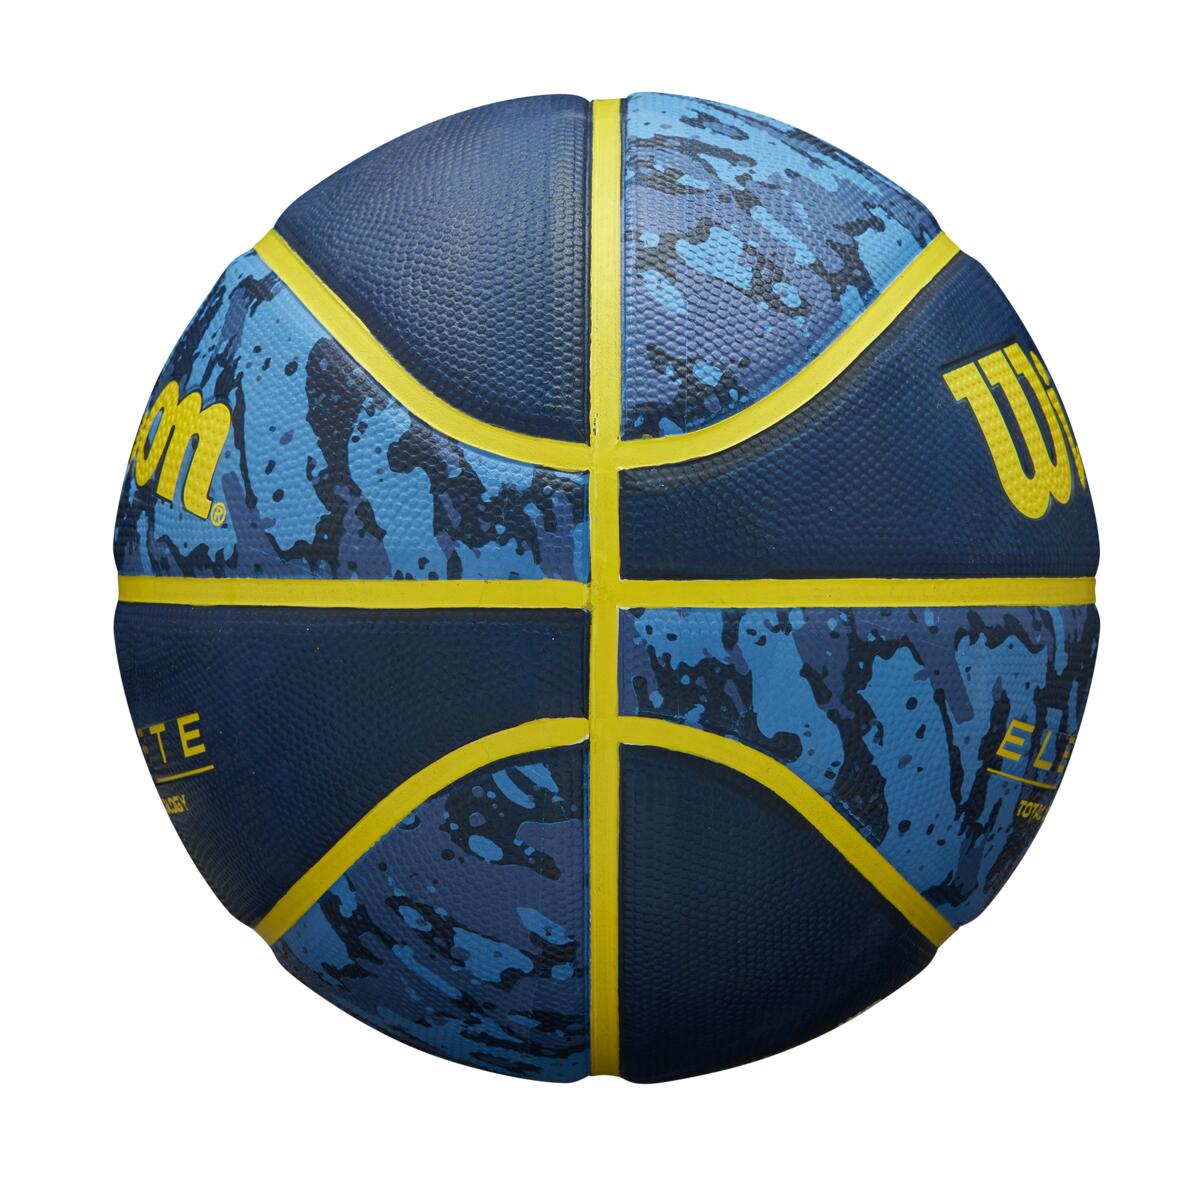 Ballons de basket Elevate Blue